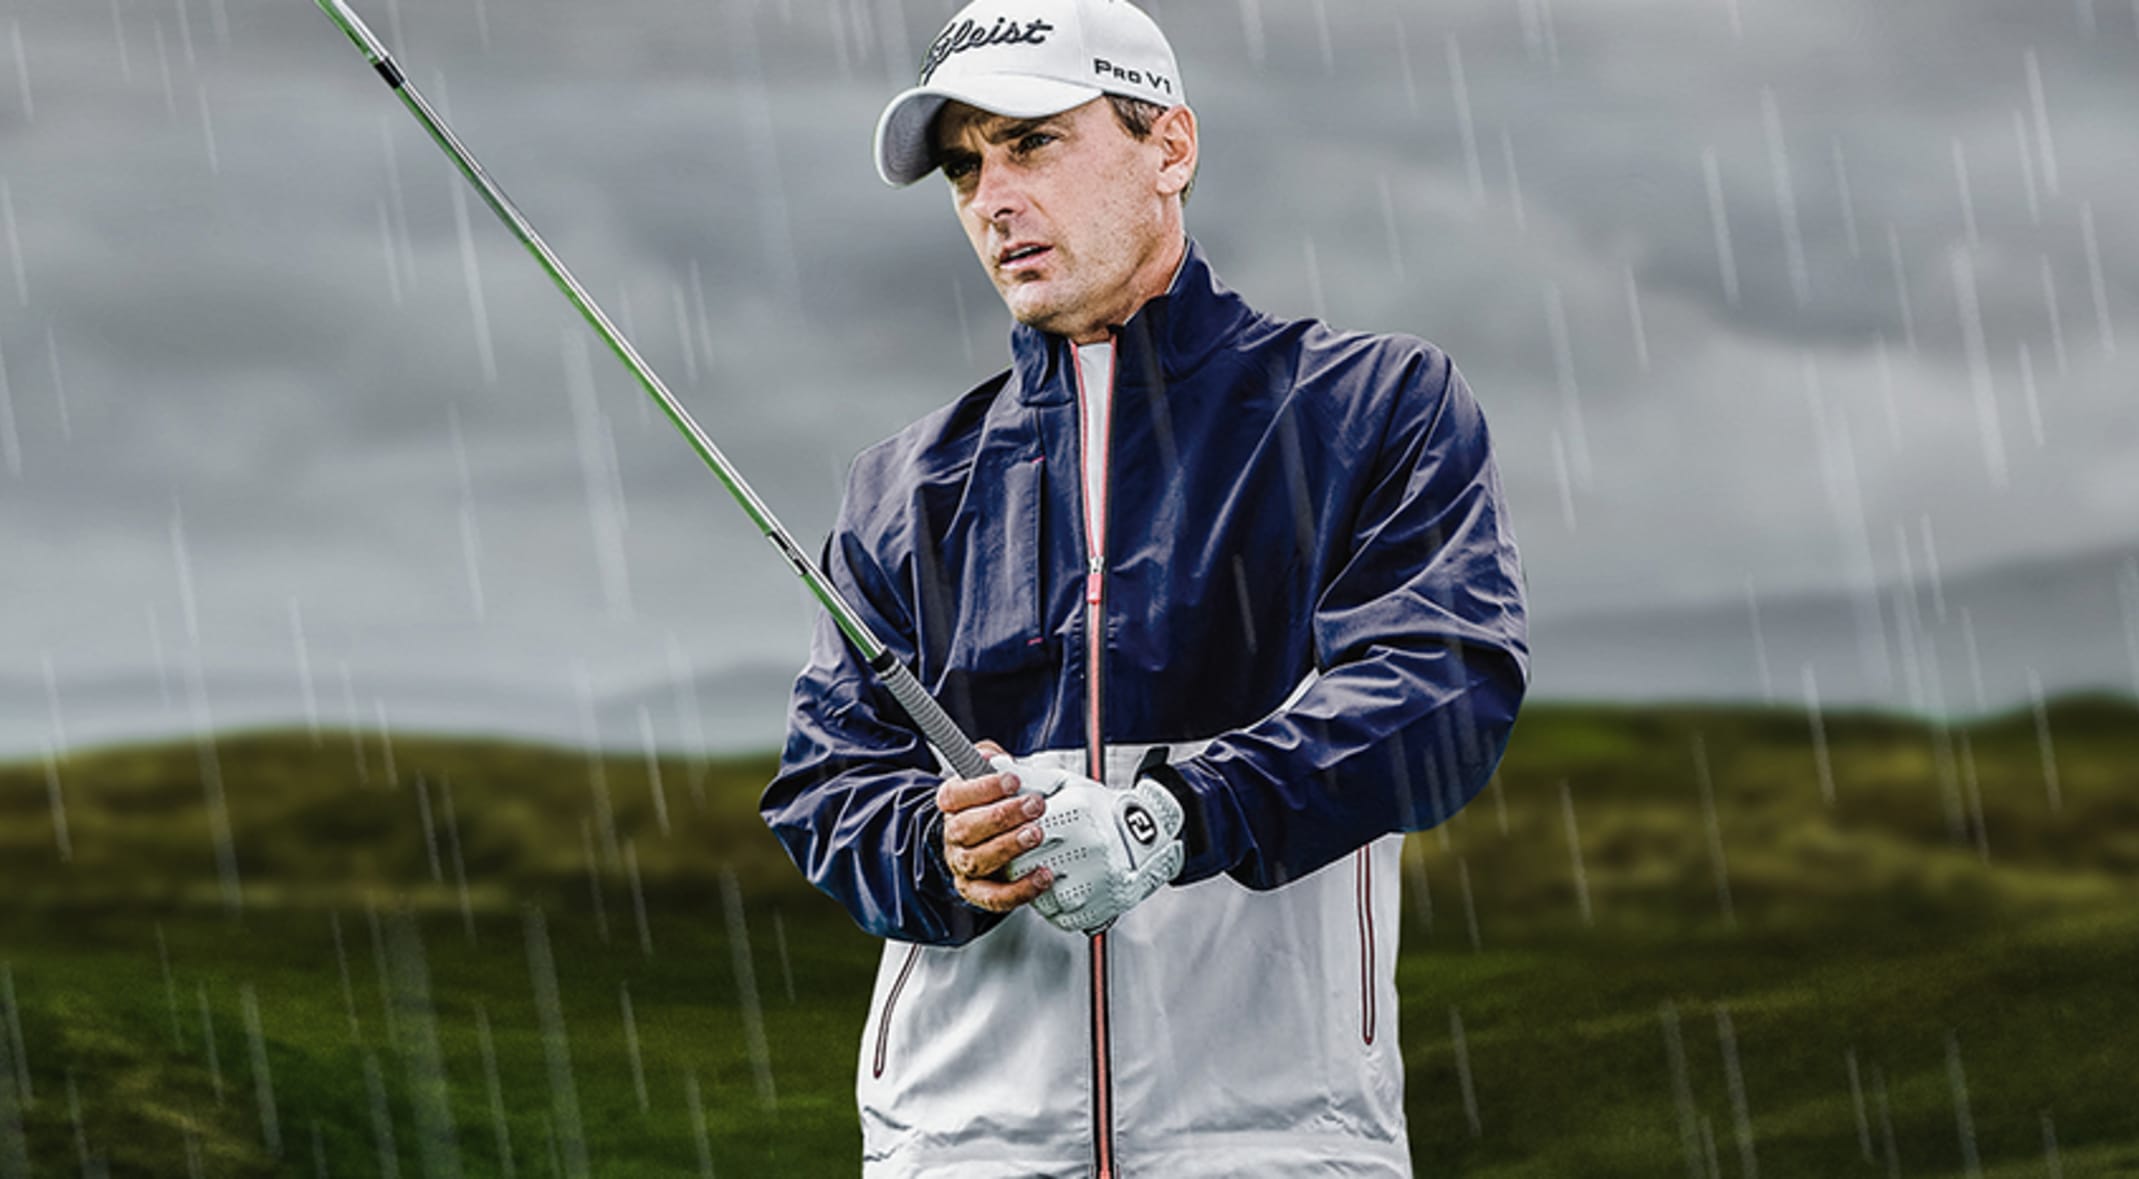 Golf Rain Gear Canada | vlr.eng.br